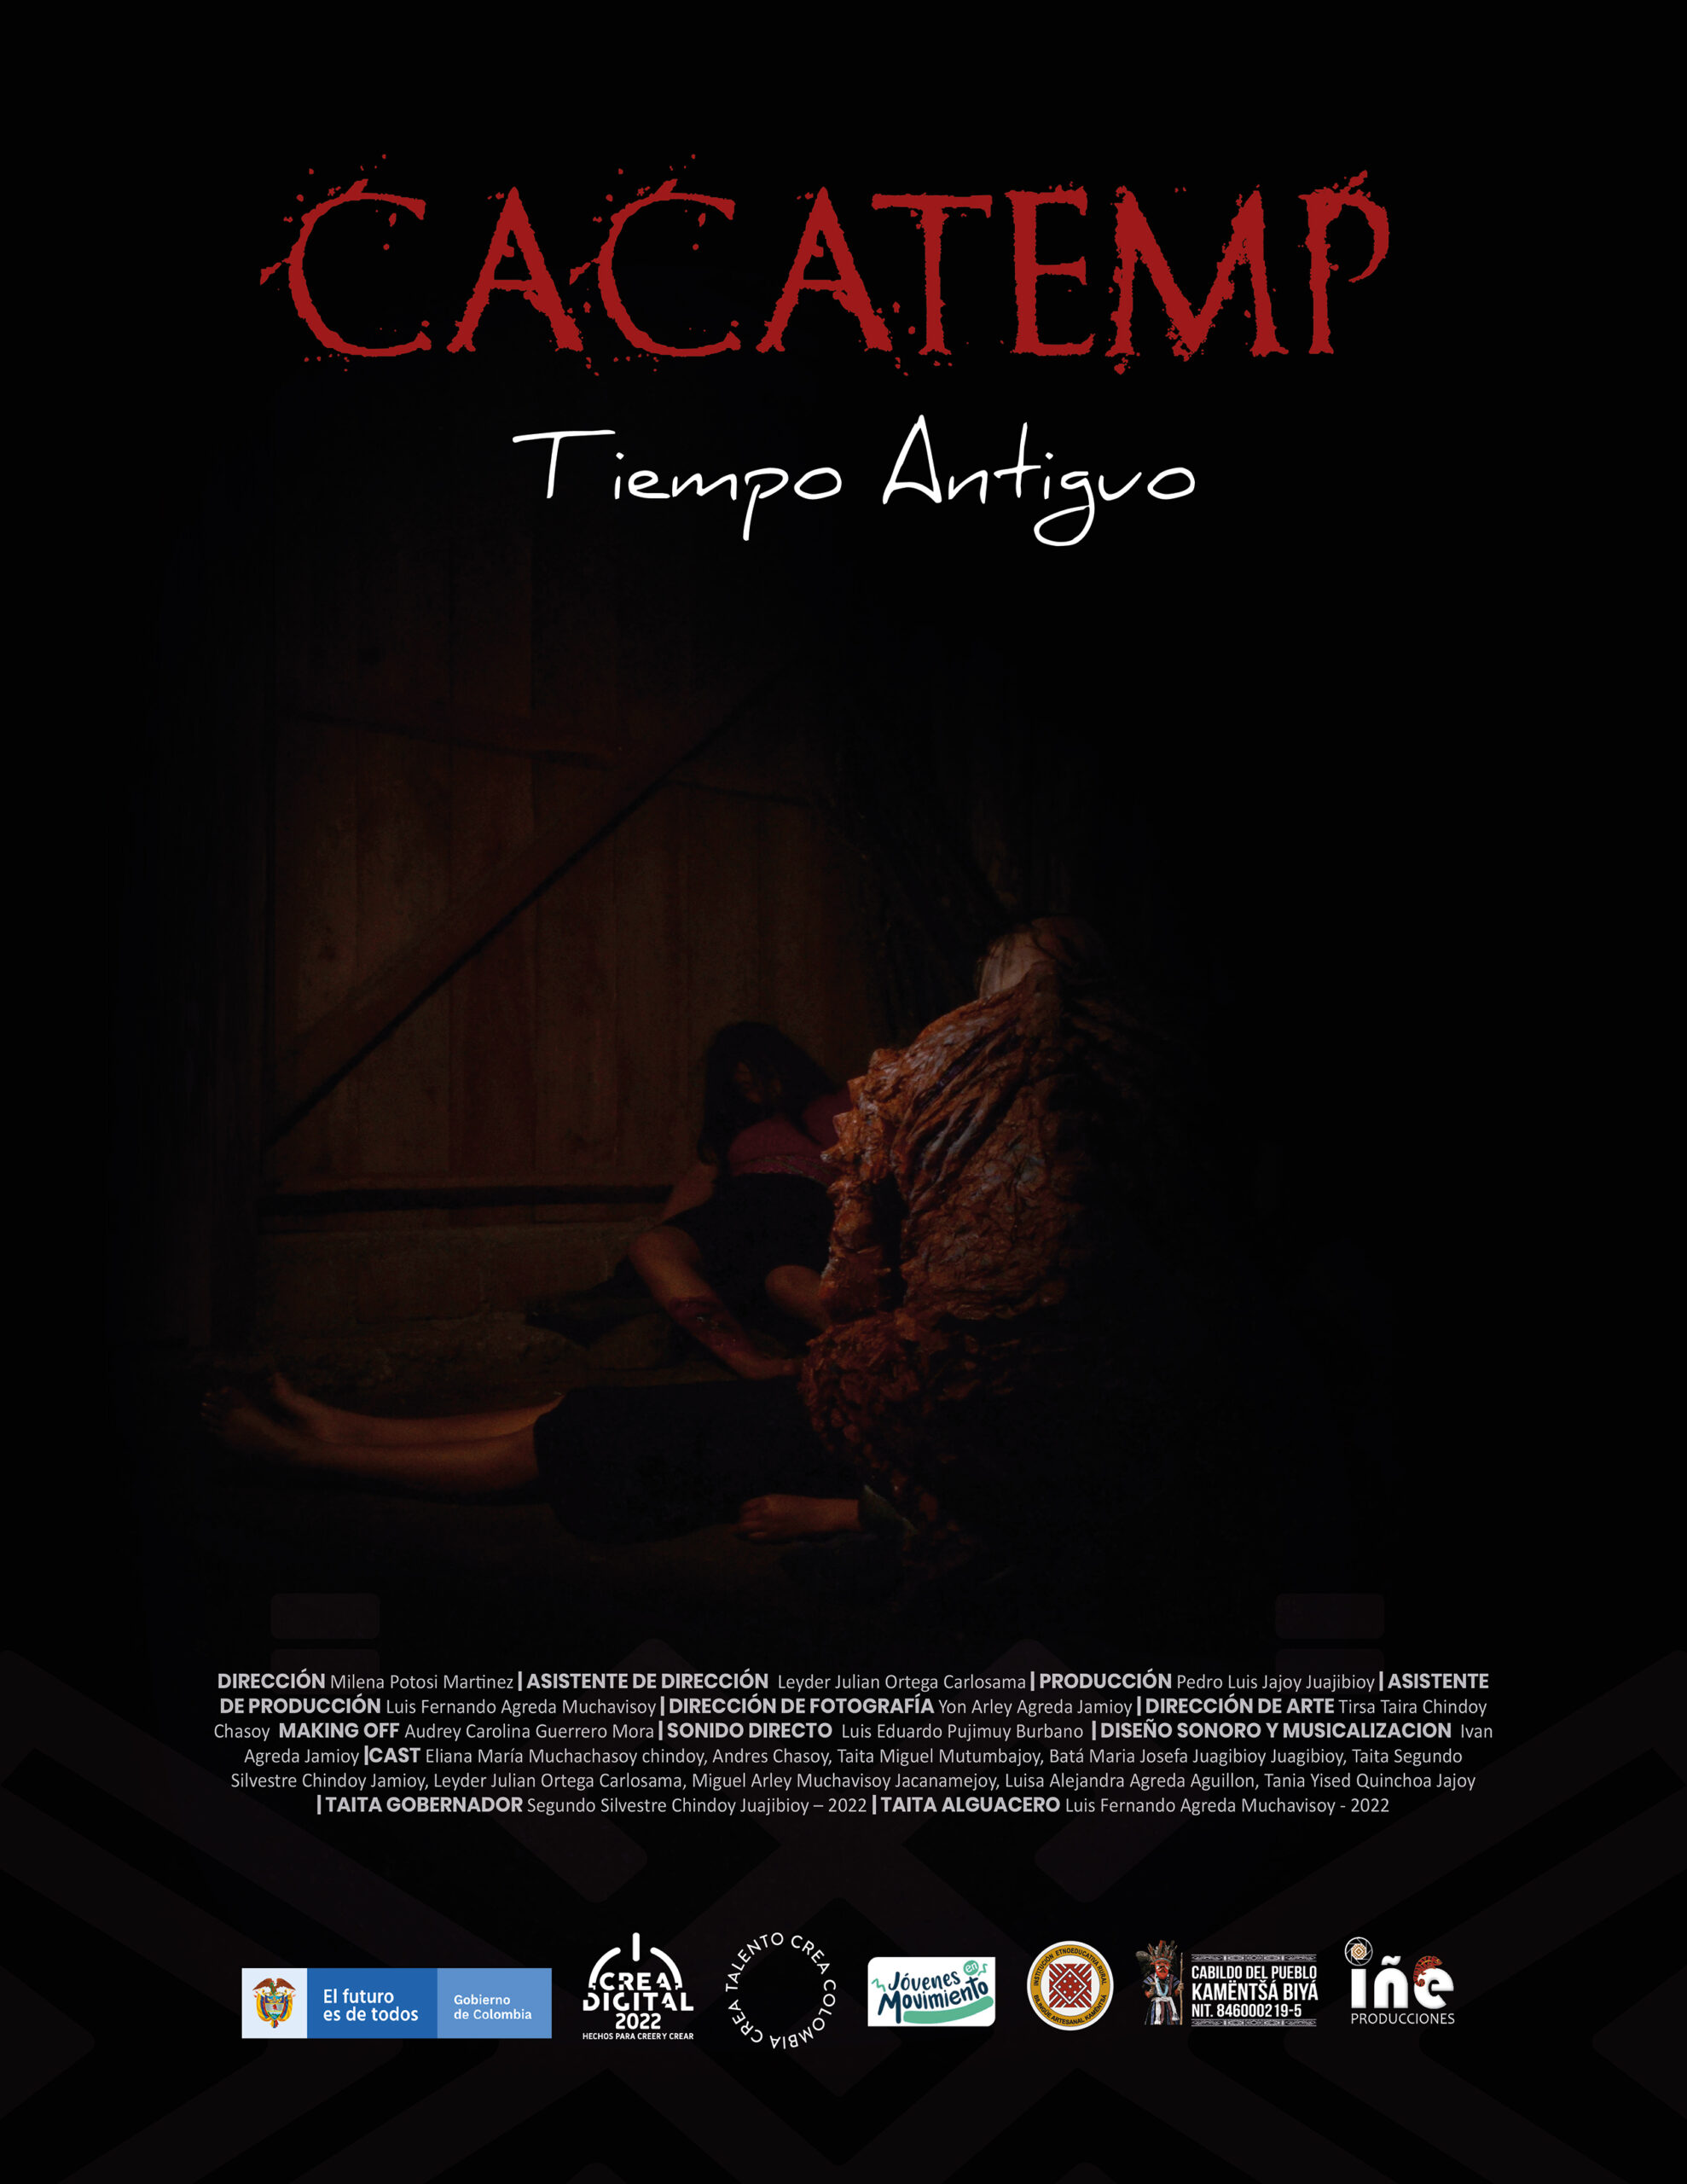 Cacatemp